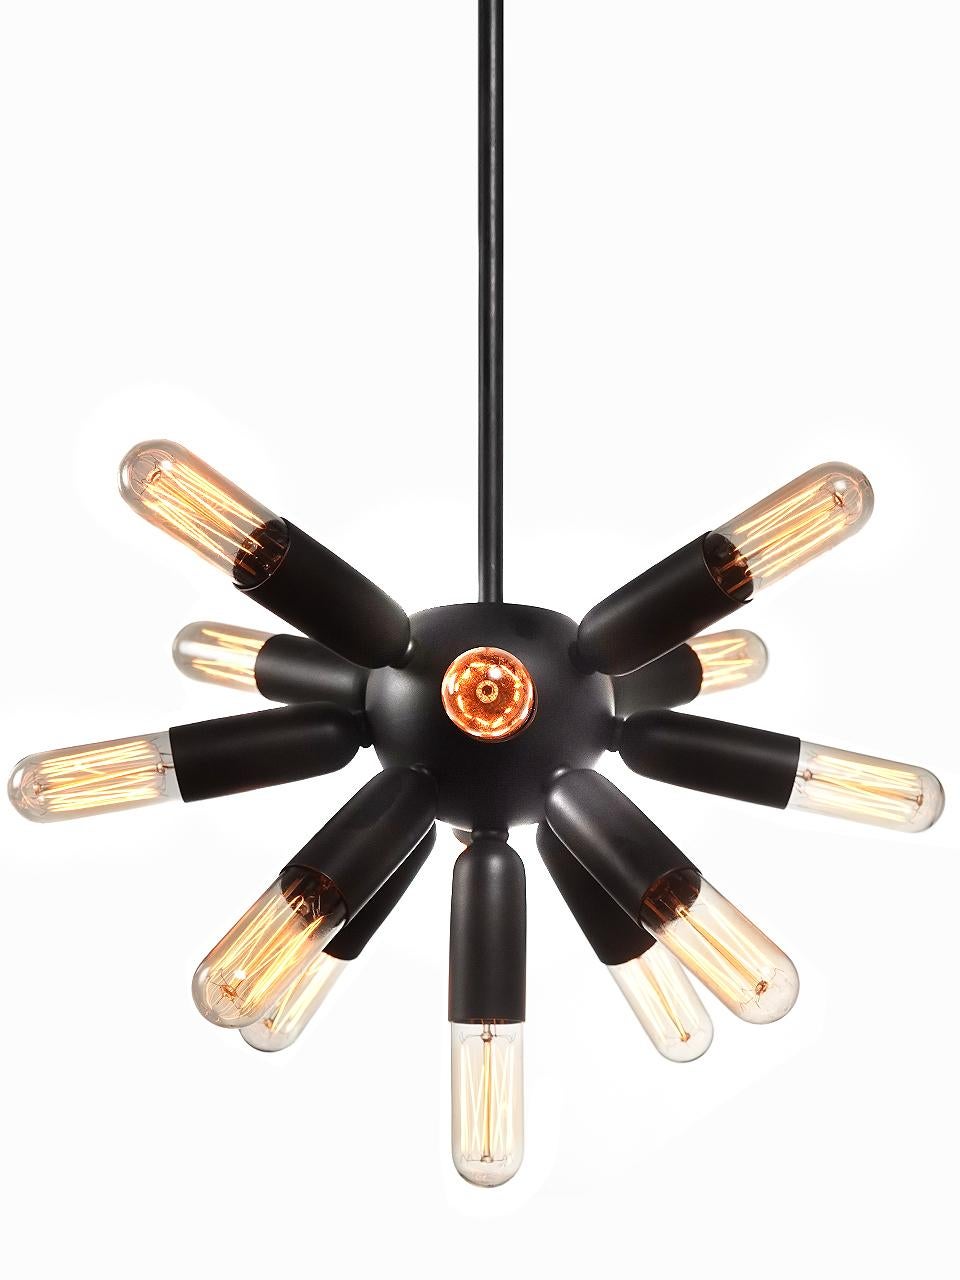 Diese klassische Spudnick Lampe hat eine schöne kompakte Größe und hat einen Durchmesser von 14 Zoll mit den Glühbirnen. Mit 13 Glühbirnen erzeugt sie einen dramatischen Starburst-Effekt. Das Metall ist in dunklem Messing ausgeführt und bildet einen